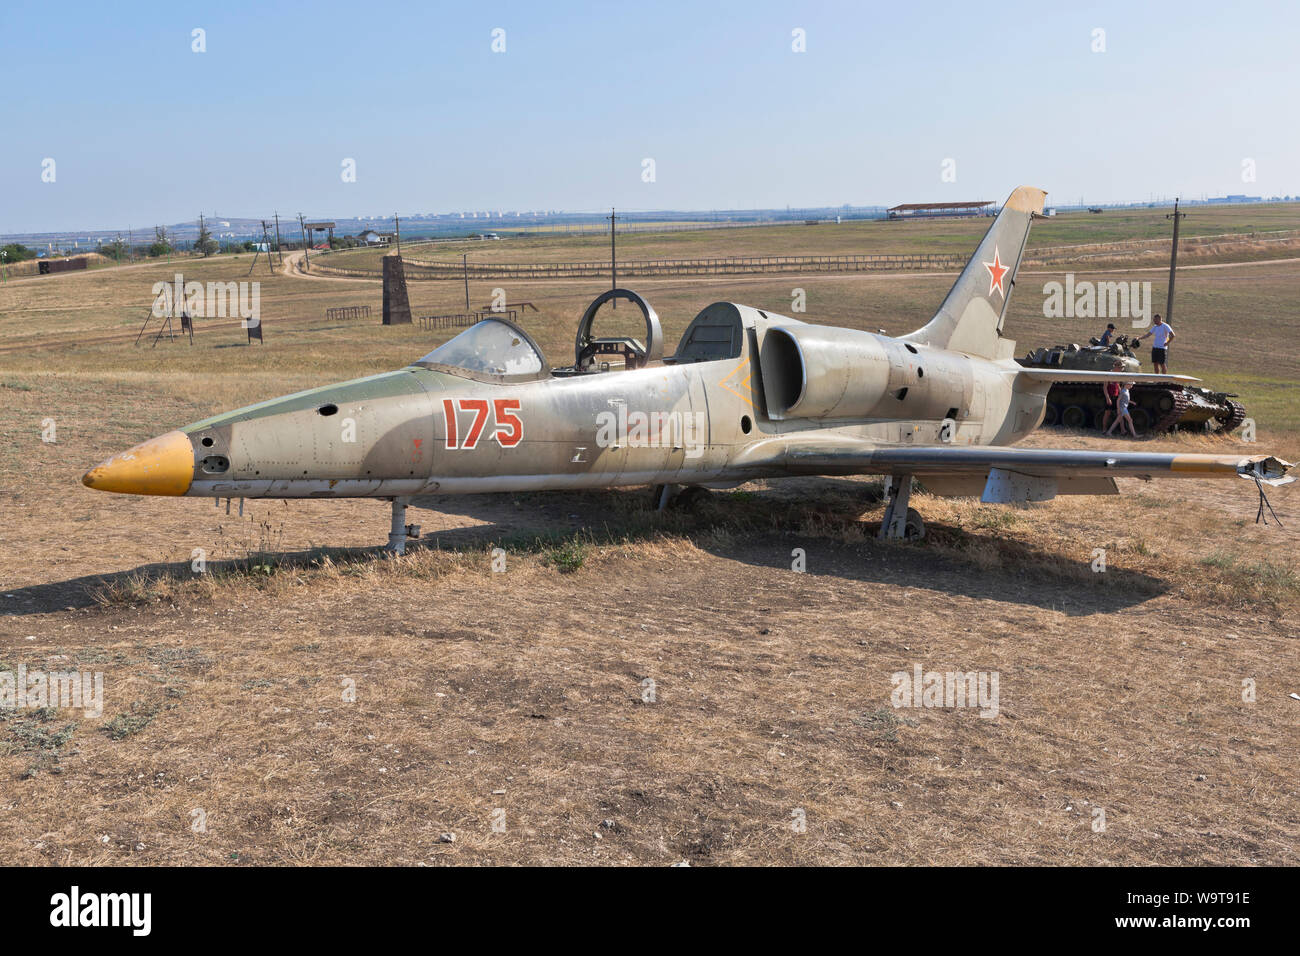 Taman, Temryuk district, région de Krasnodar, Russie - le 17 juillet 2019 : Le reste de l'aéronef de formation Aero L-39 Albatros sur Lysaya Gora dans la villa Banque D'Images